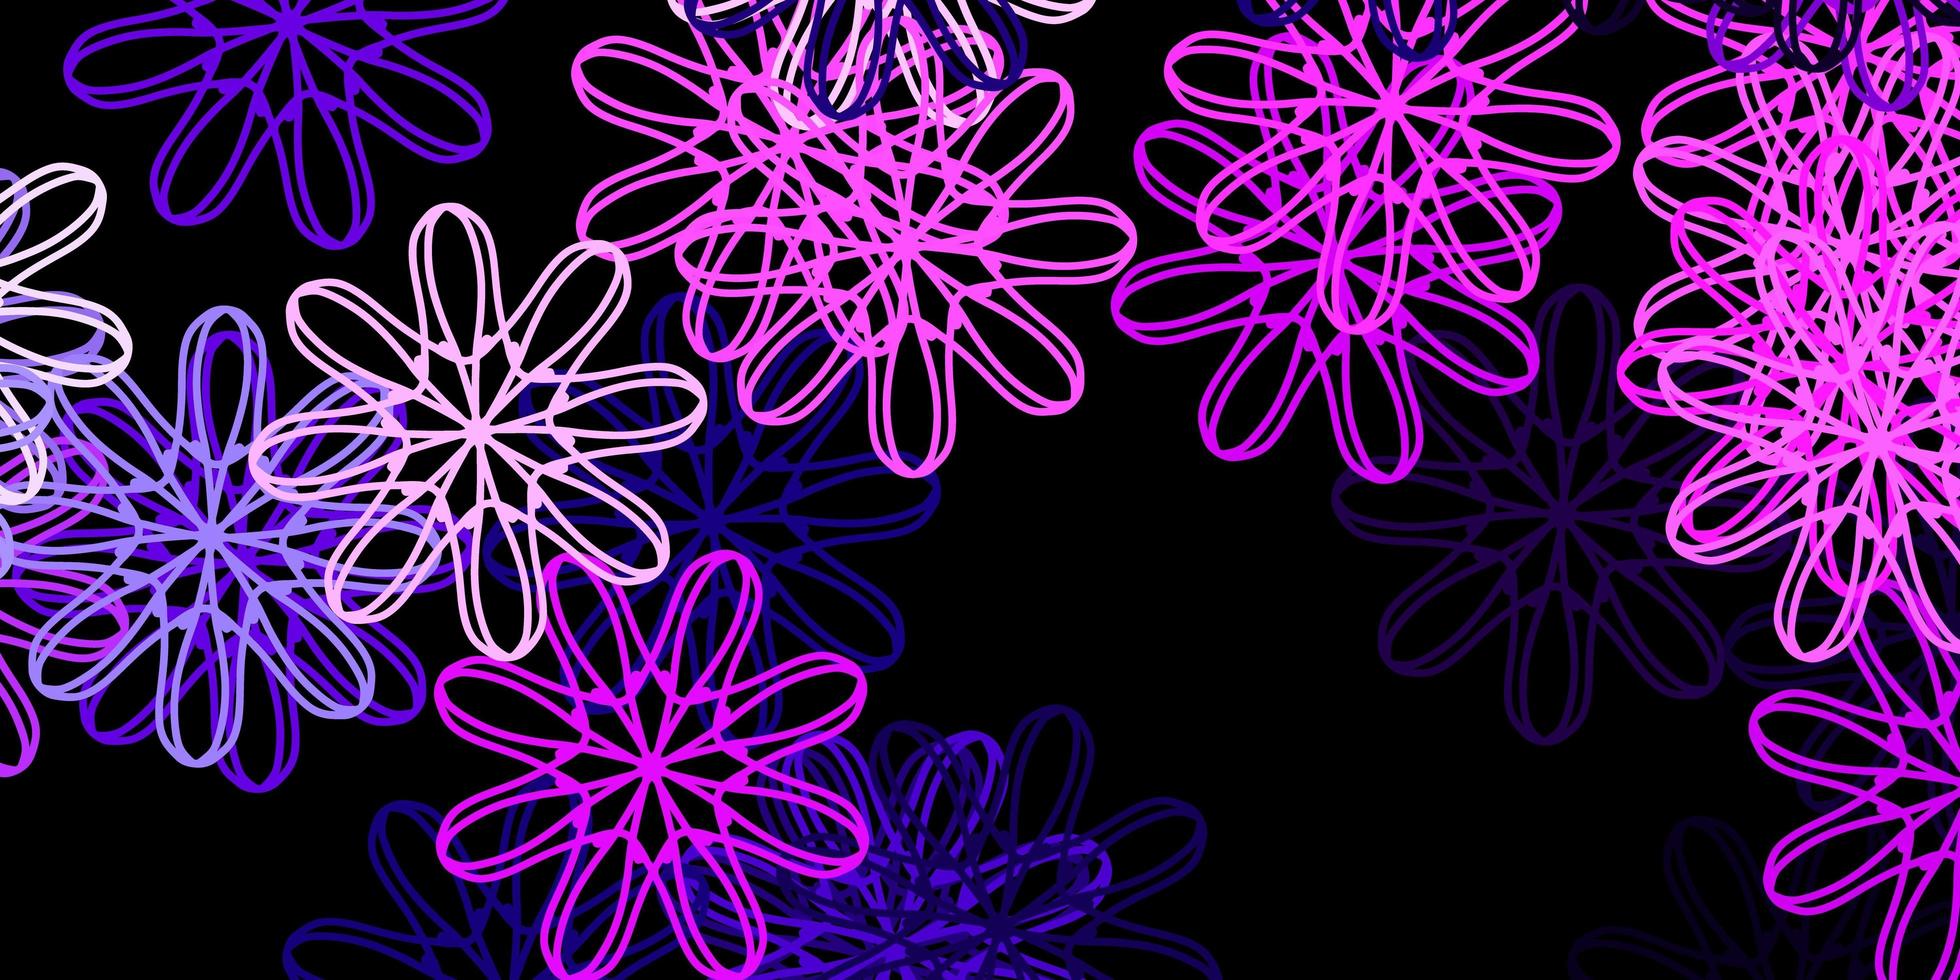 Telón de fondo de vector rosa oscuro con formas caóticas.